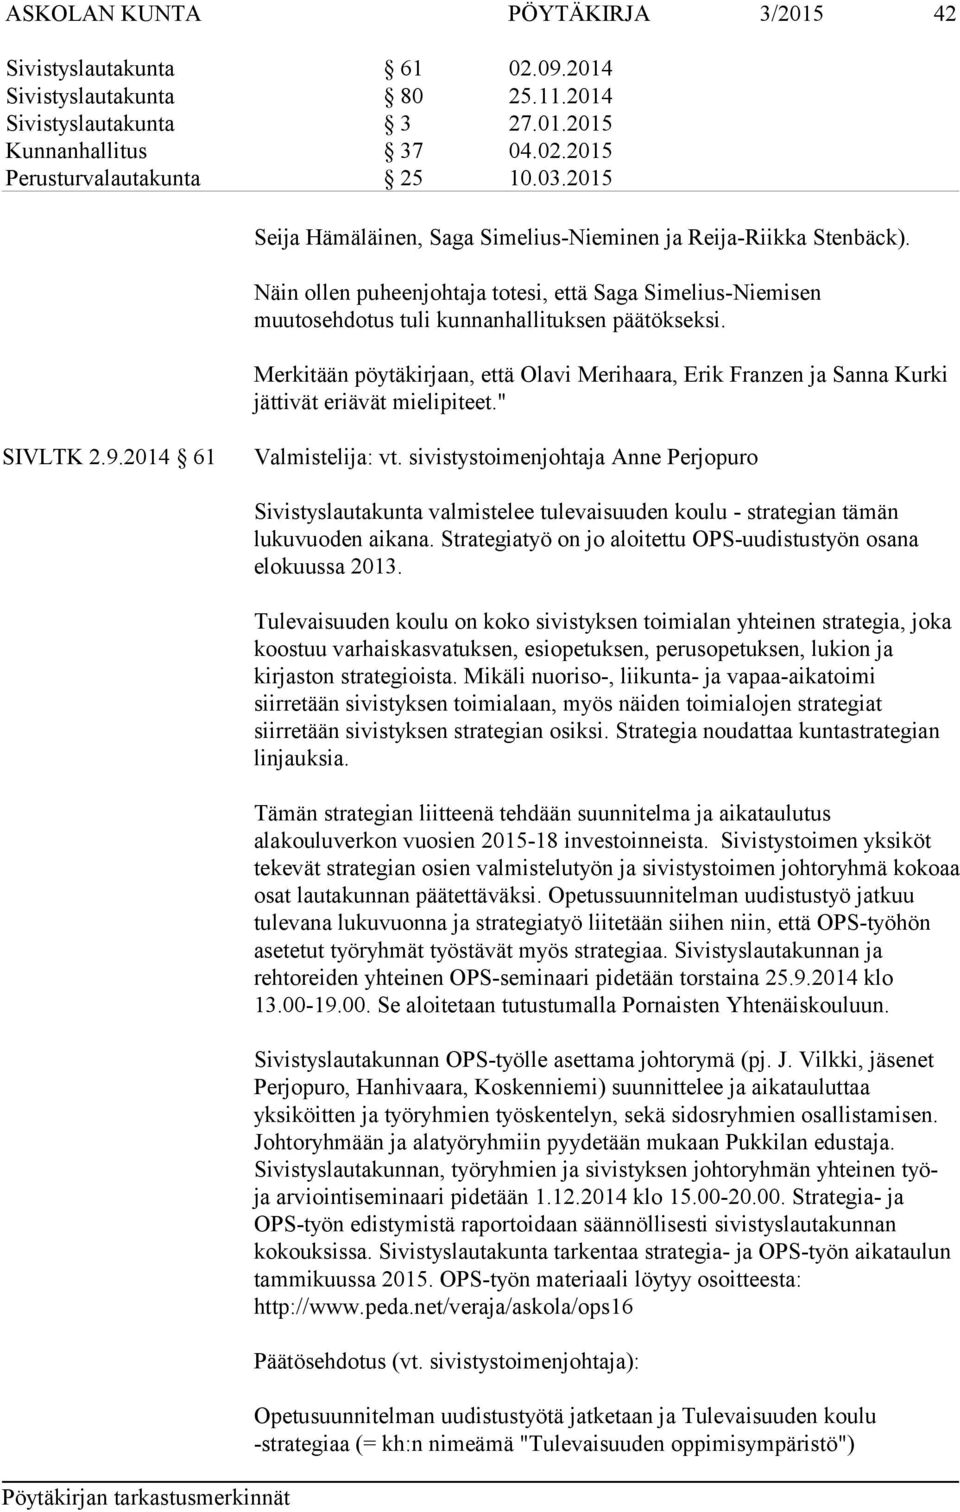 Merkitään pöytäkirjaan, että Olavi Merihaara, Erik Franzen ja Sanna Kurki jättivät eriävät mielipiteet." SIVLTK 2.9.2014 61 Valmistelija: vt.